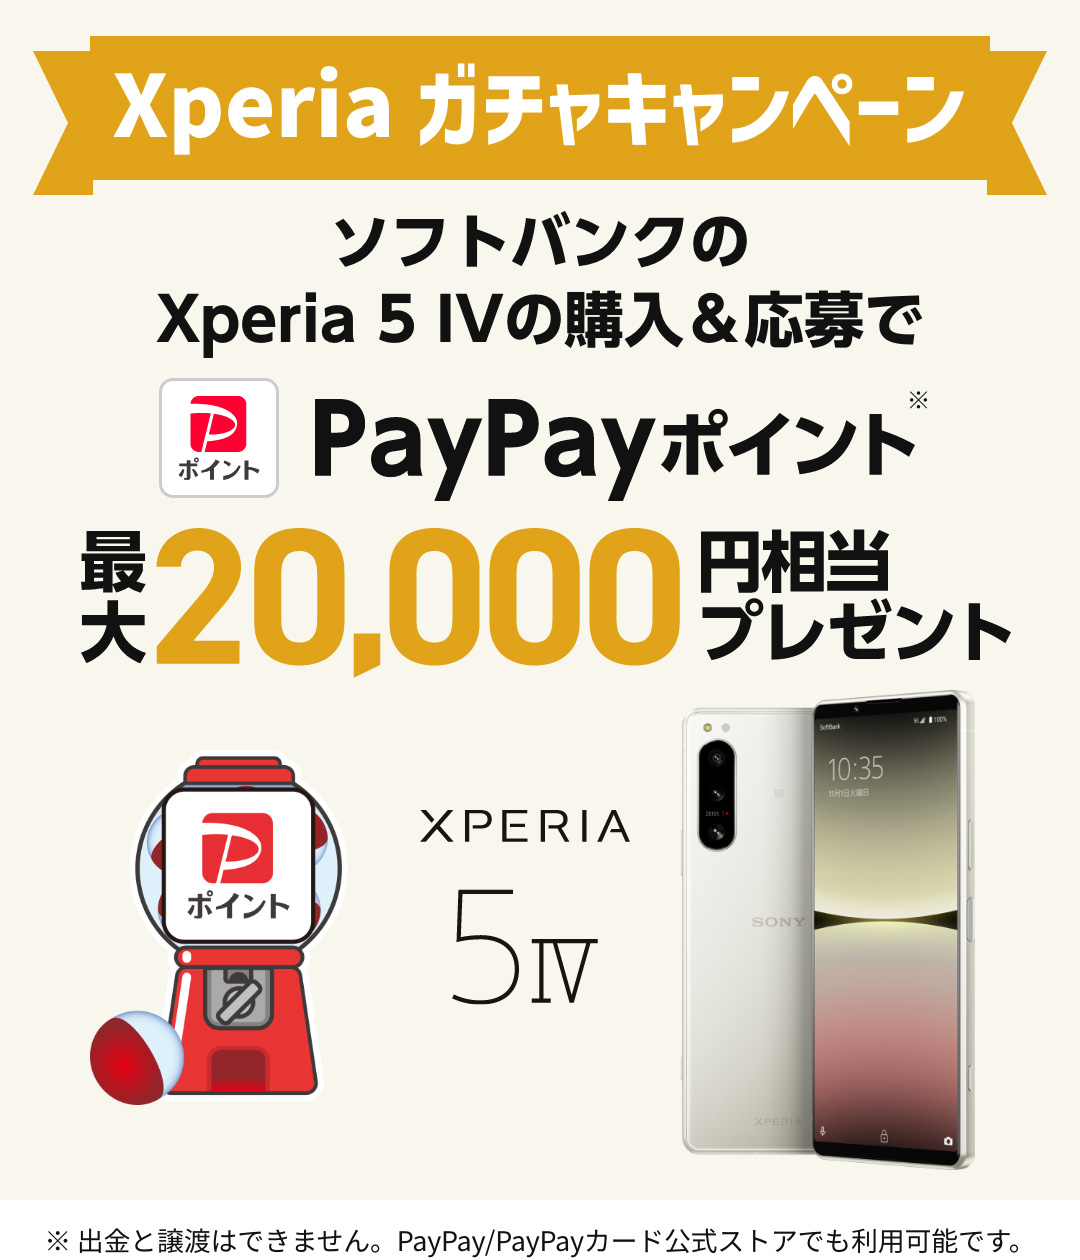 Xperia ガチャキャンペーン ソフトバンクのXperia 5 IVの購入＆応募でPayPayポイント＊最大20,000円相当プレゼント ※出金と譲渡はできません。PayPay/PayPayカード公式ストアでも利用可能です。